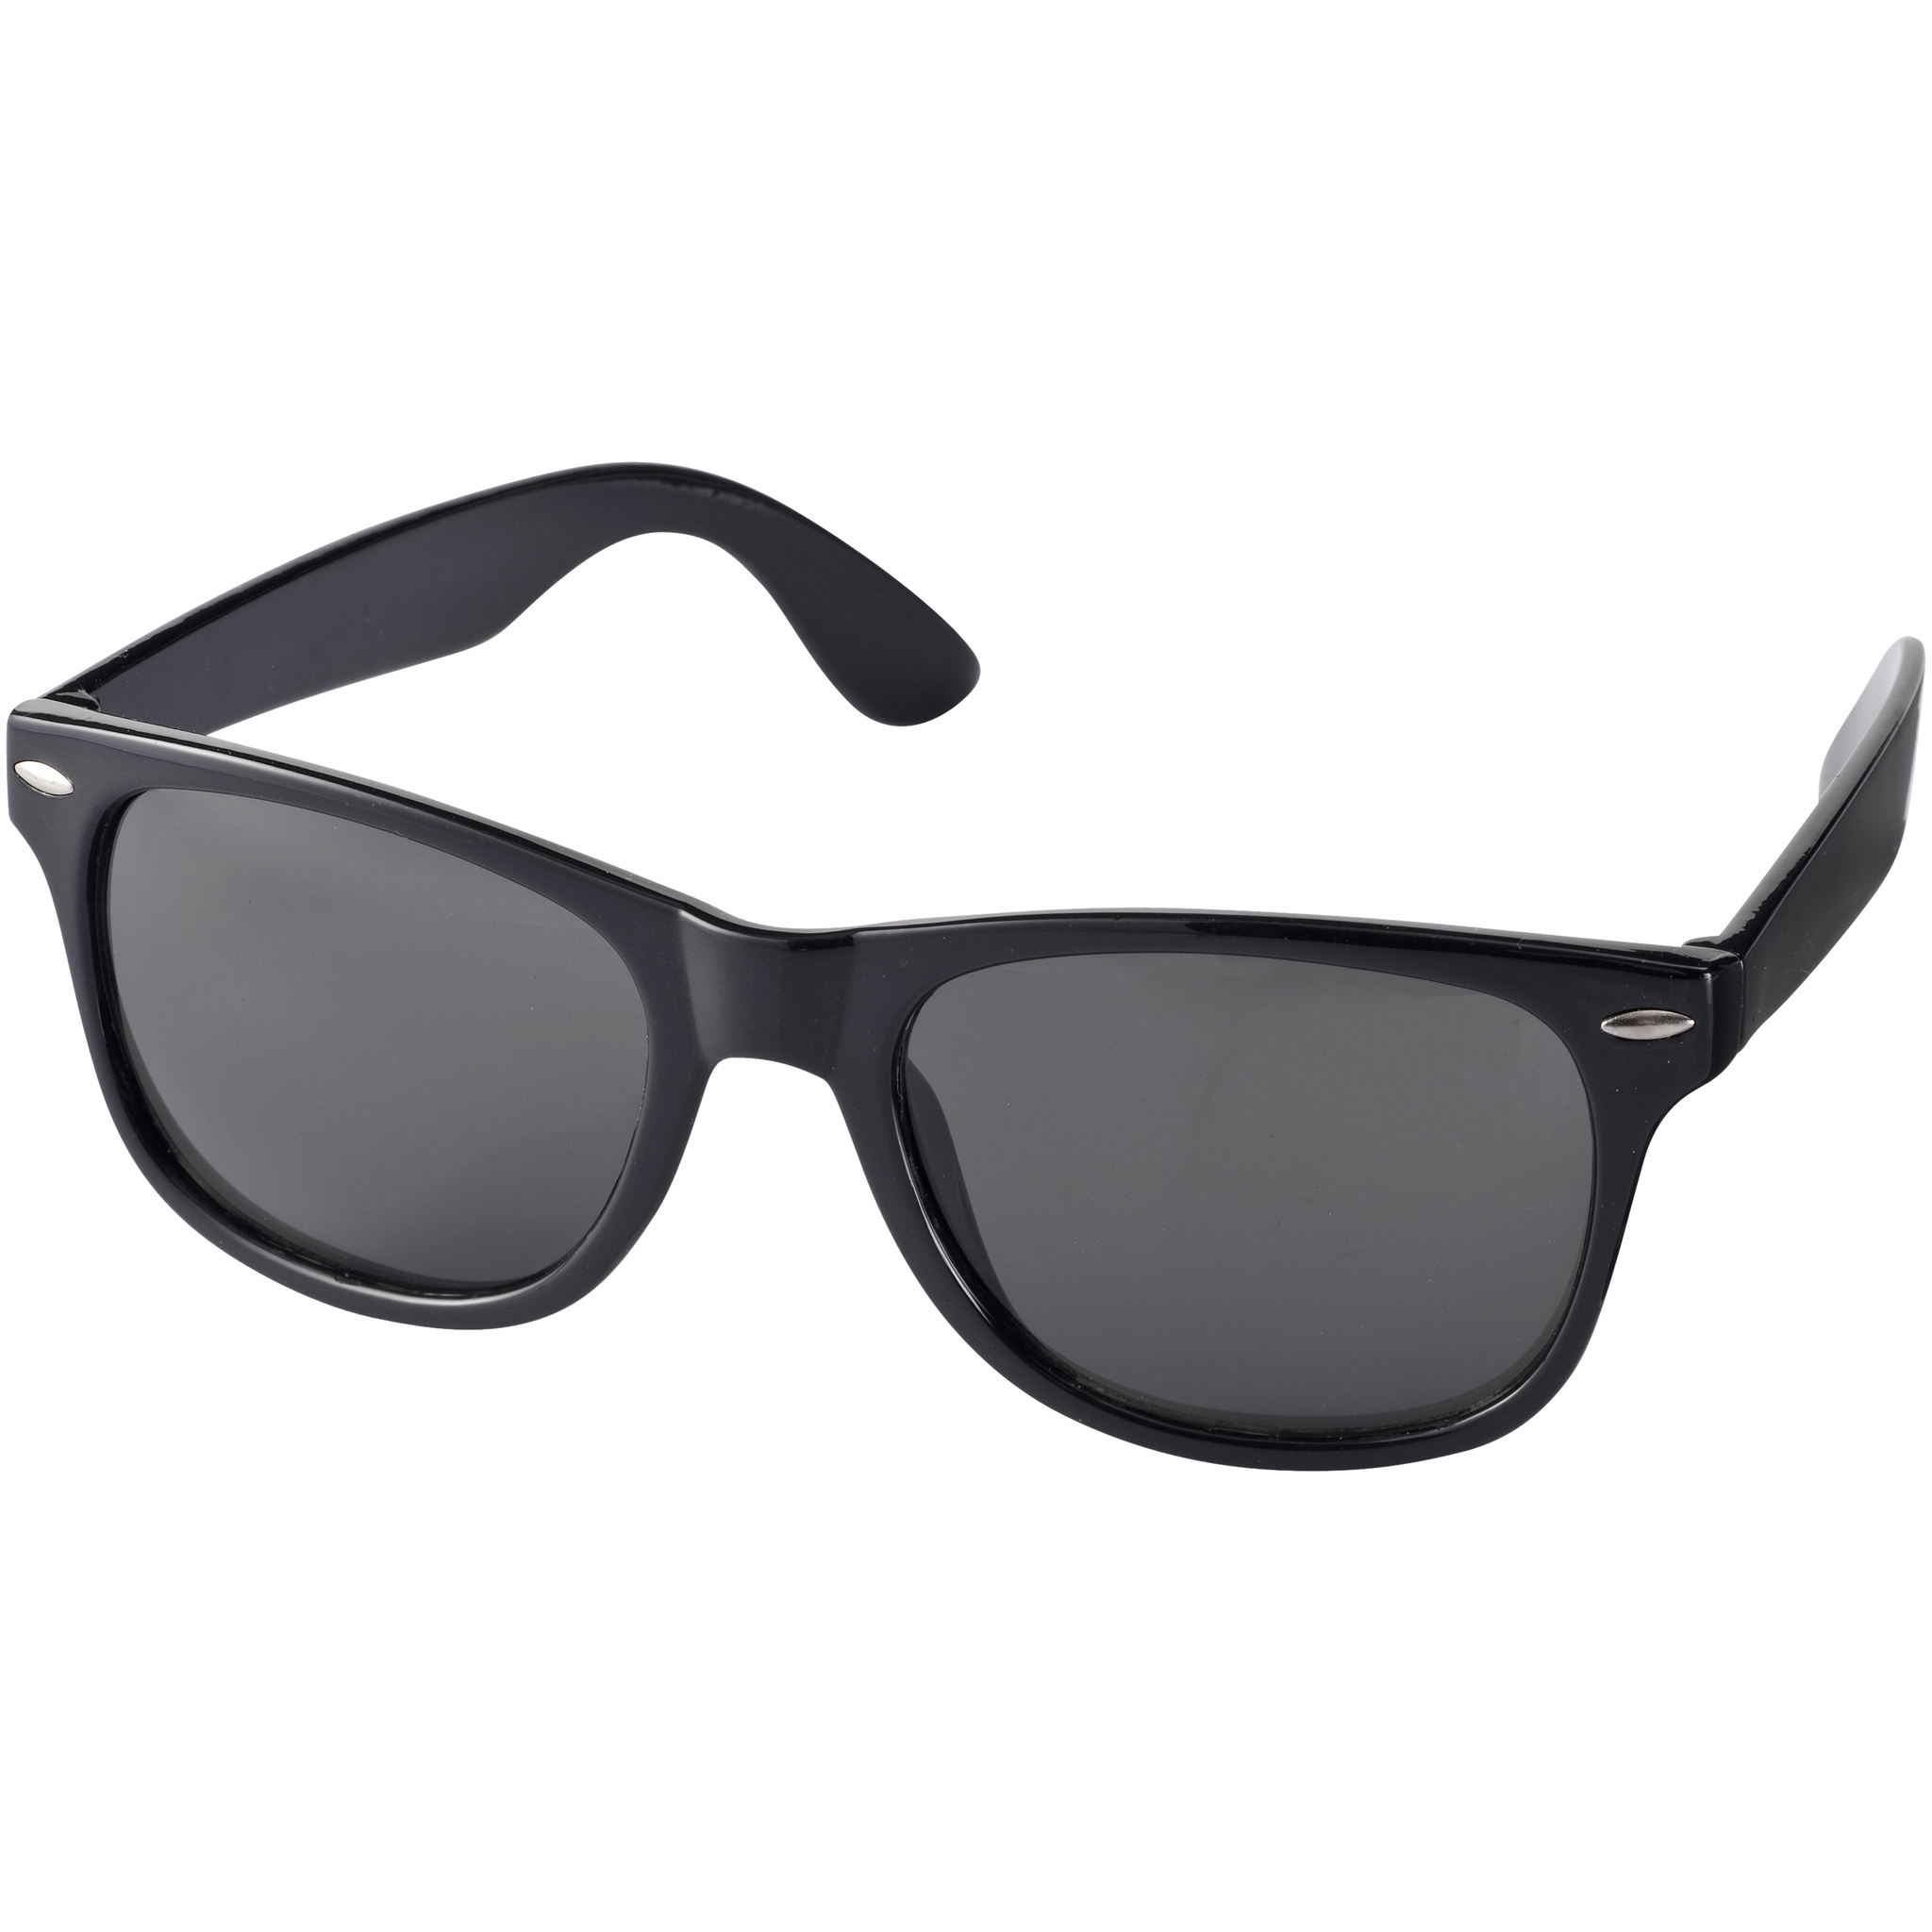 Sunglasses очки солнцезащитные. Очки солнцезащитные «Sun ray». Очки солнцезащитные «Crockett». Очки ray Sun rs5965. Очки солнцезащитные a-z 6260вр.